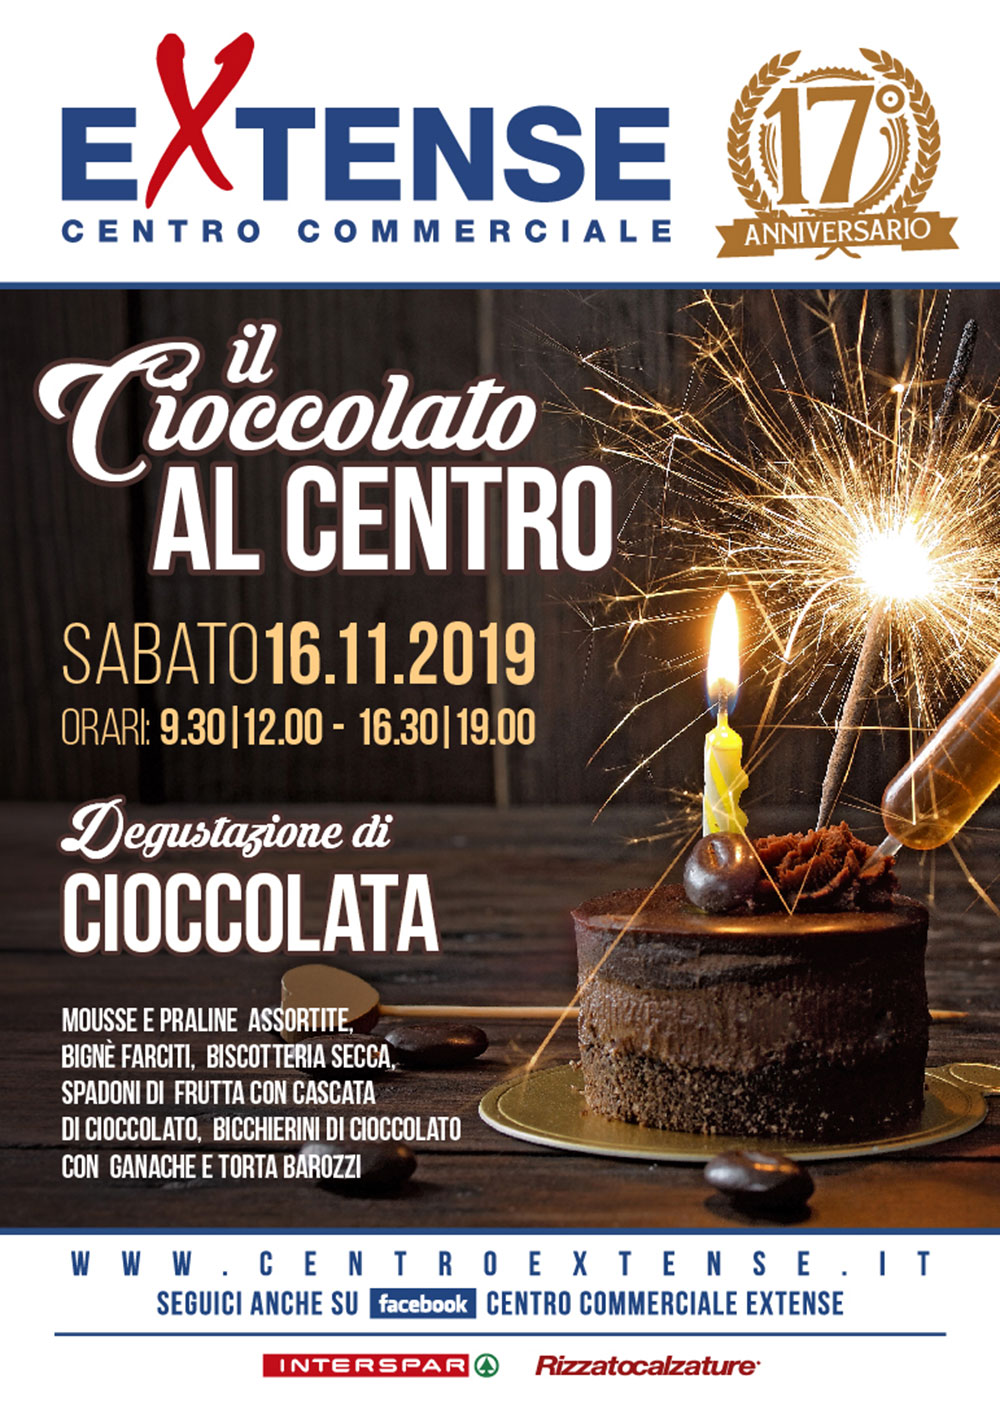 17° Anniversario del Centro Commerciale Extense - Il Cioccolato in Centro - 16 novembre 2019